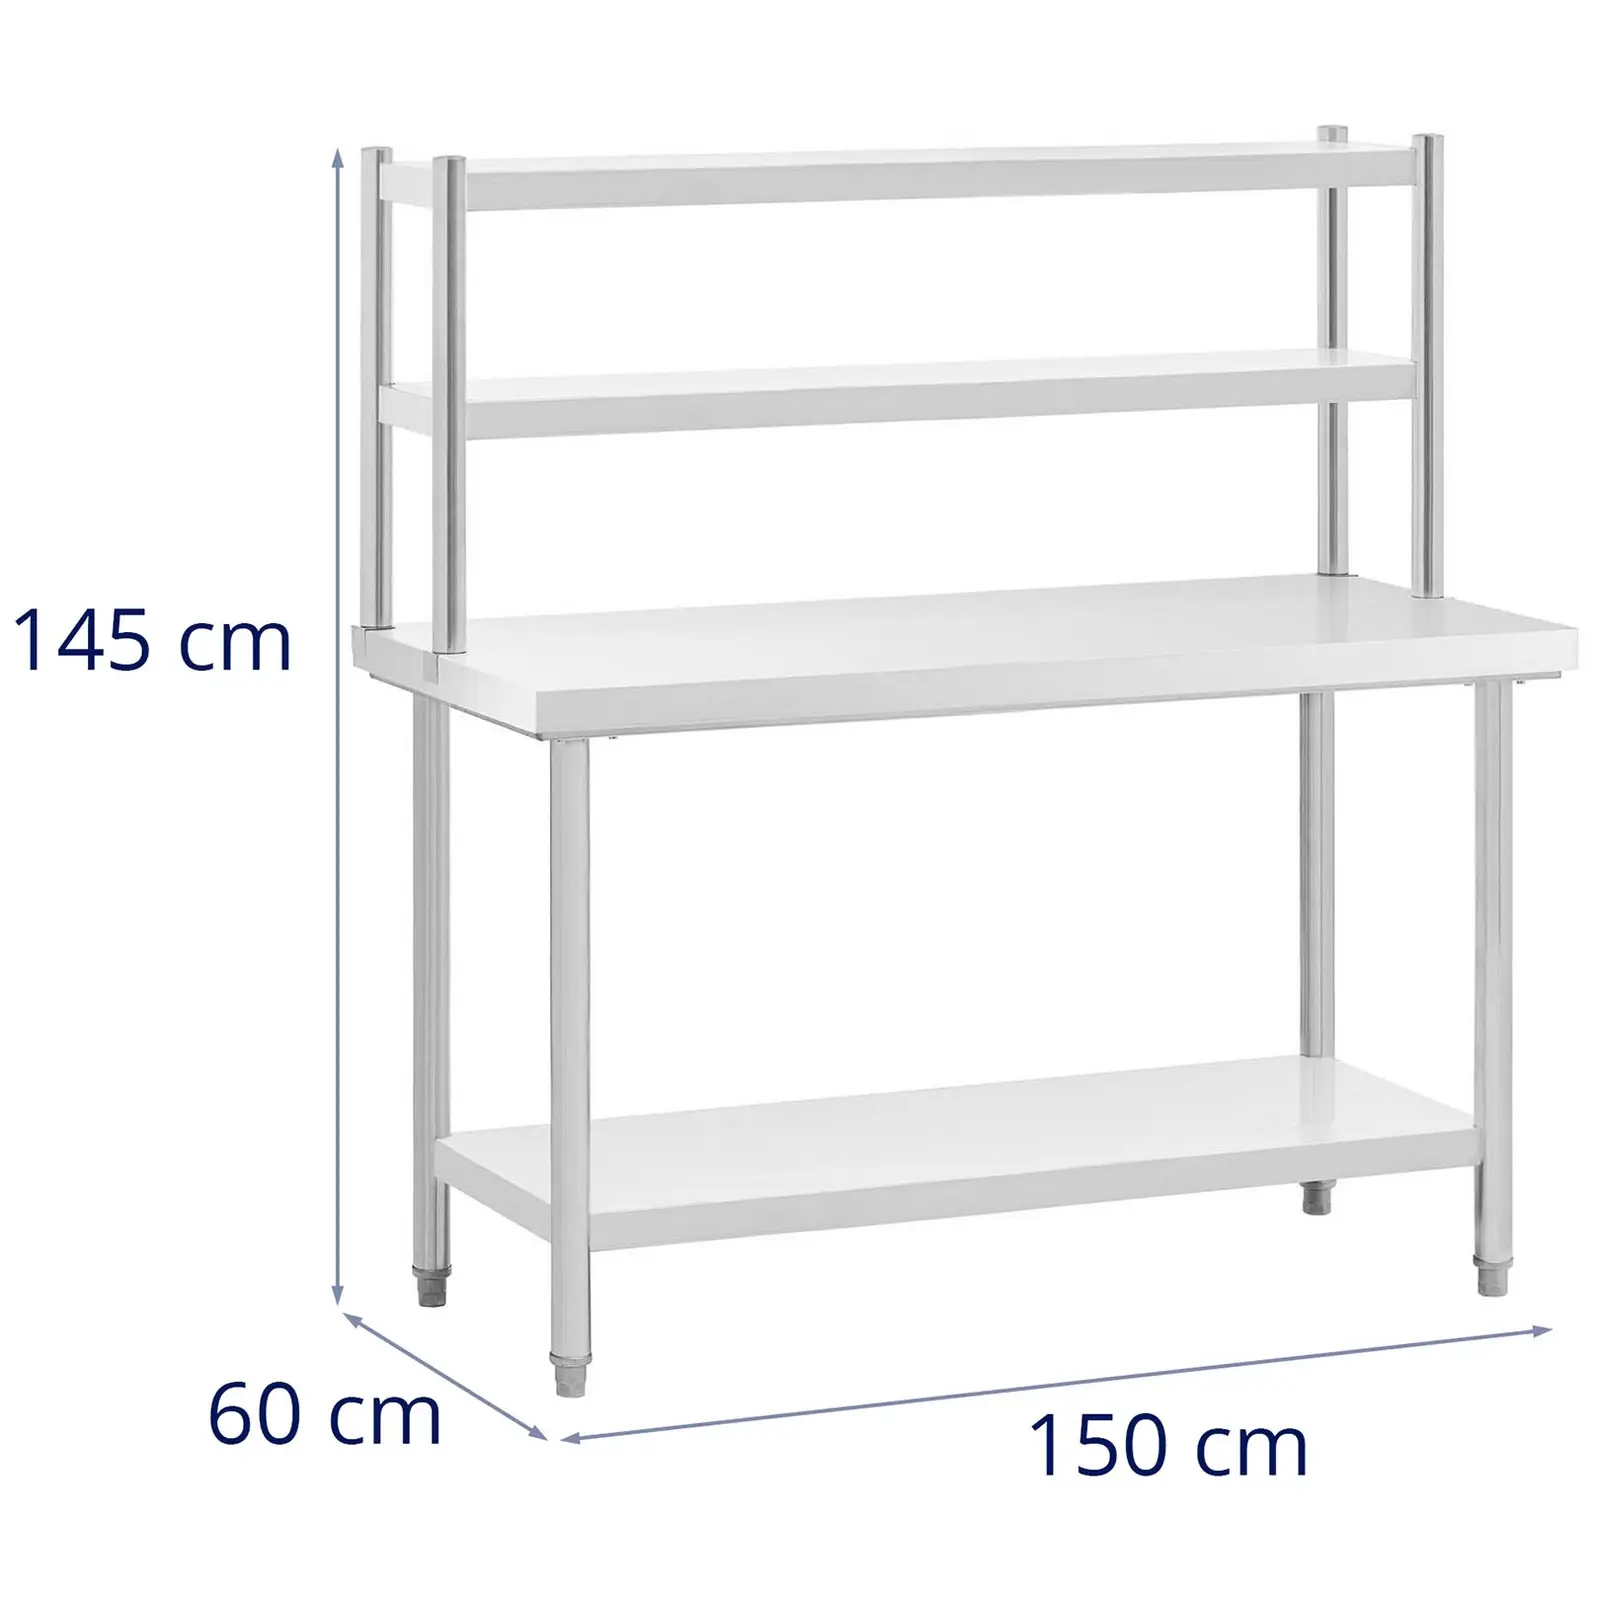 Arbeitstisch mit Aufsatzboard - 2 Ablagen - 150 x 60 cm - 300 kg